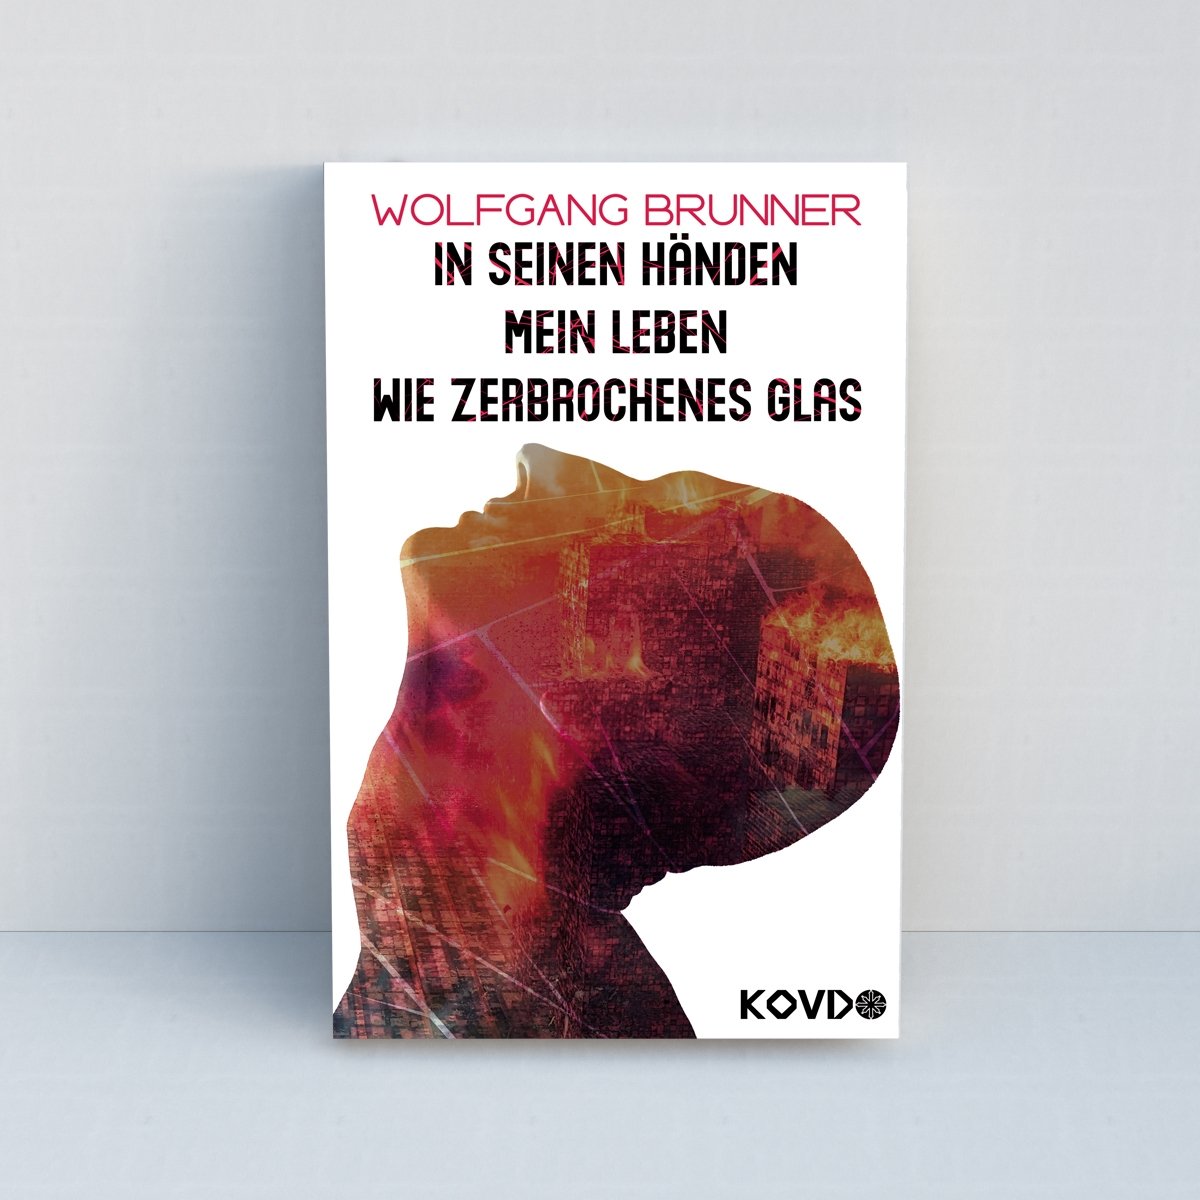 In seinen Händen mein Leben wie zerbrochenes Glas von Wolfgang Brunner - Standard Edition